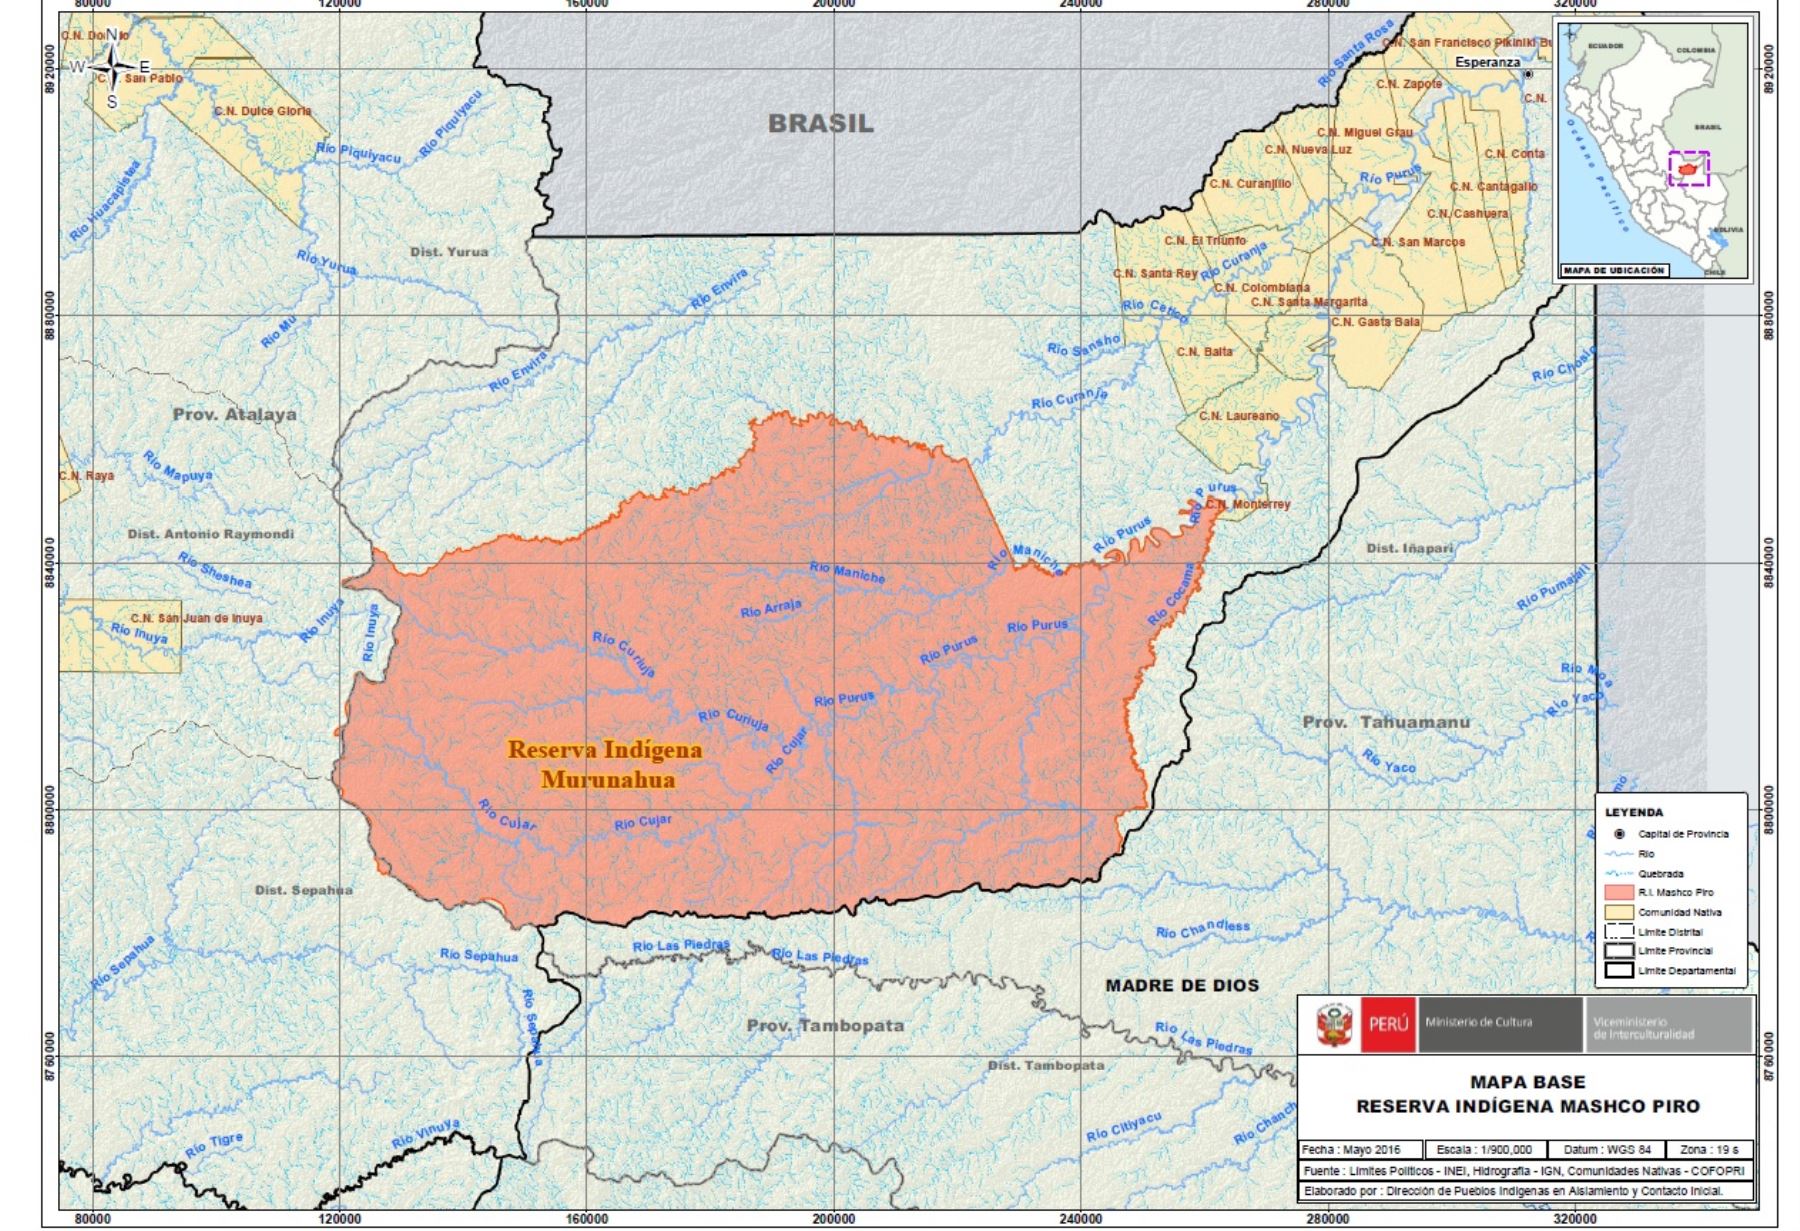 Mapa de la Reserva Indígena Mashco Piro. Imagen: Ministerio de Cultura.